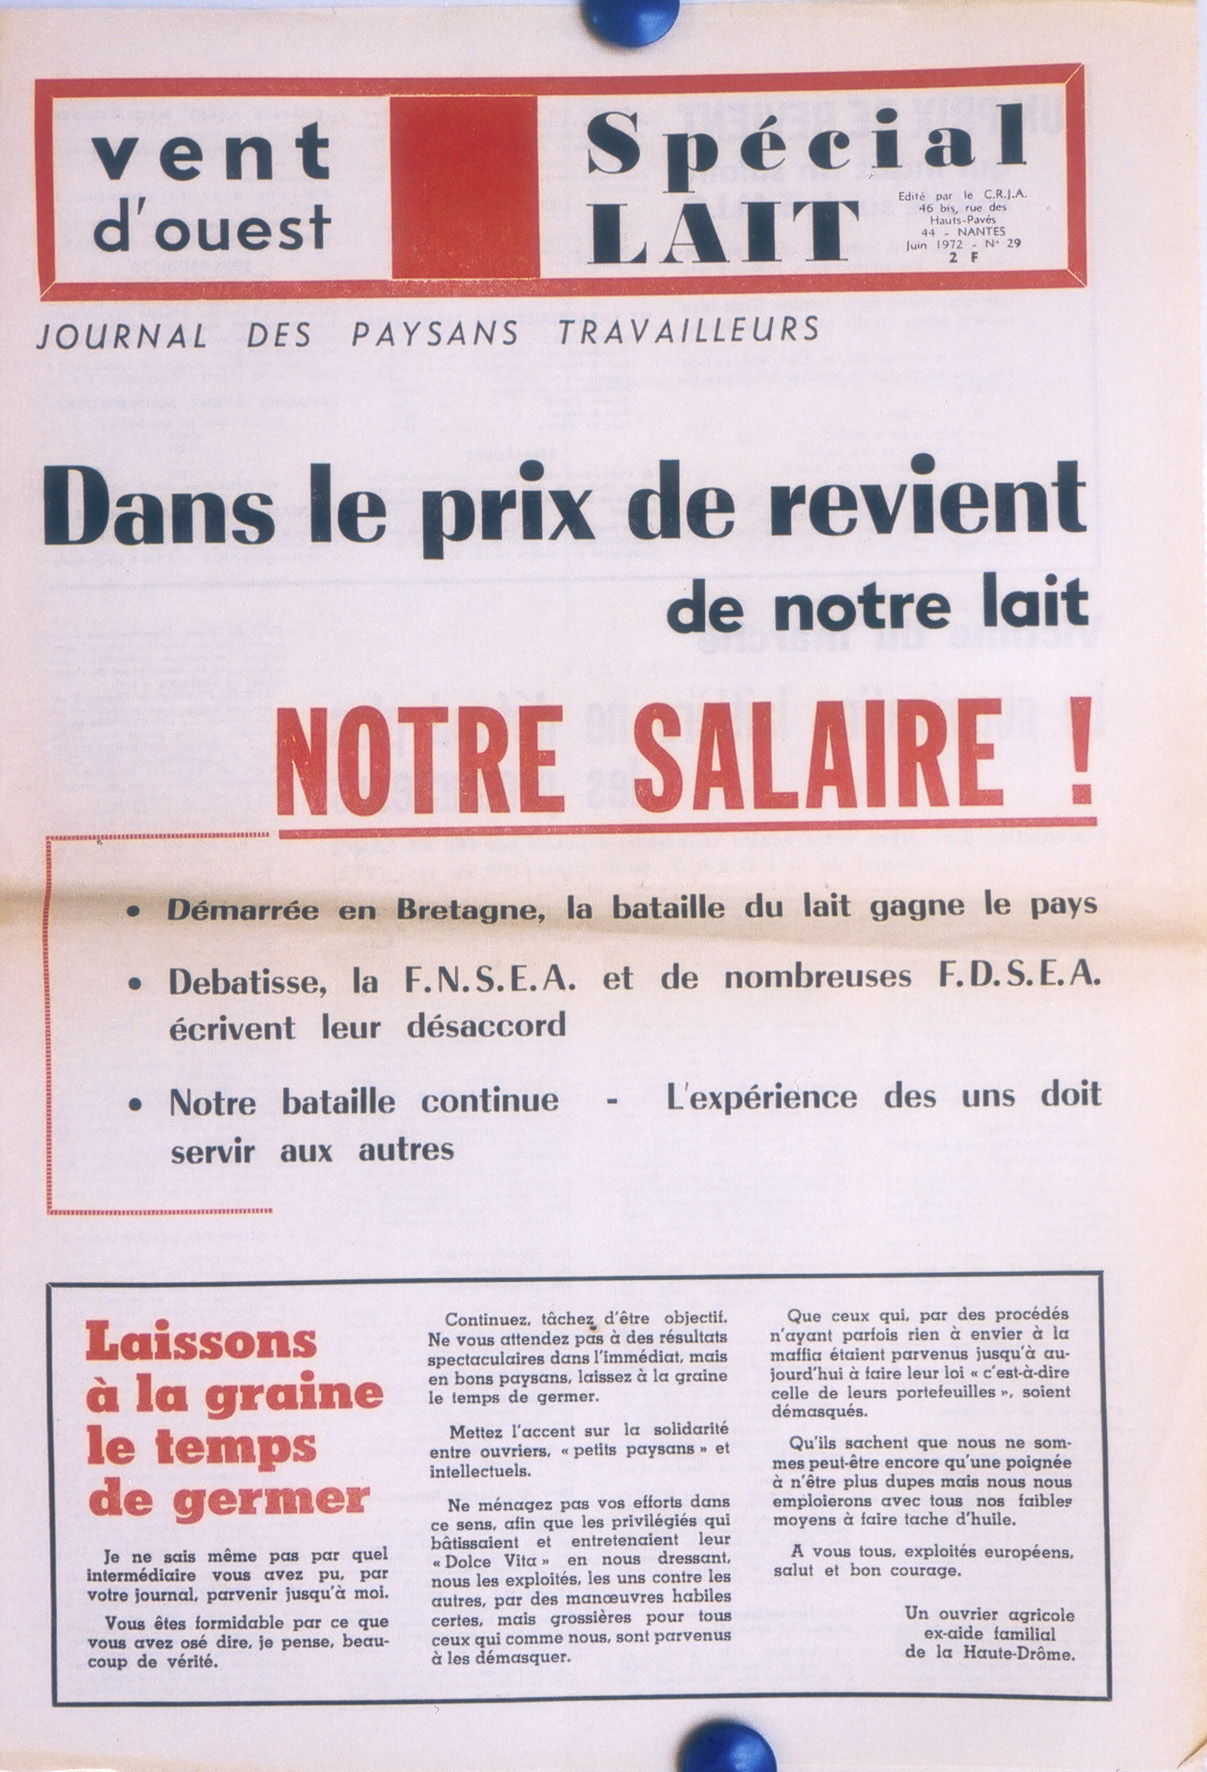 Pendant la grève du lait, les producteurs de lait réclament une hausse du prix payé par les laiteries, défendent leur revenu et réclament un « salaire ». (Vent d’Ouest, n° 29, juin 1972, CHT, Nantes). 